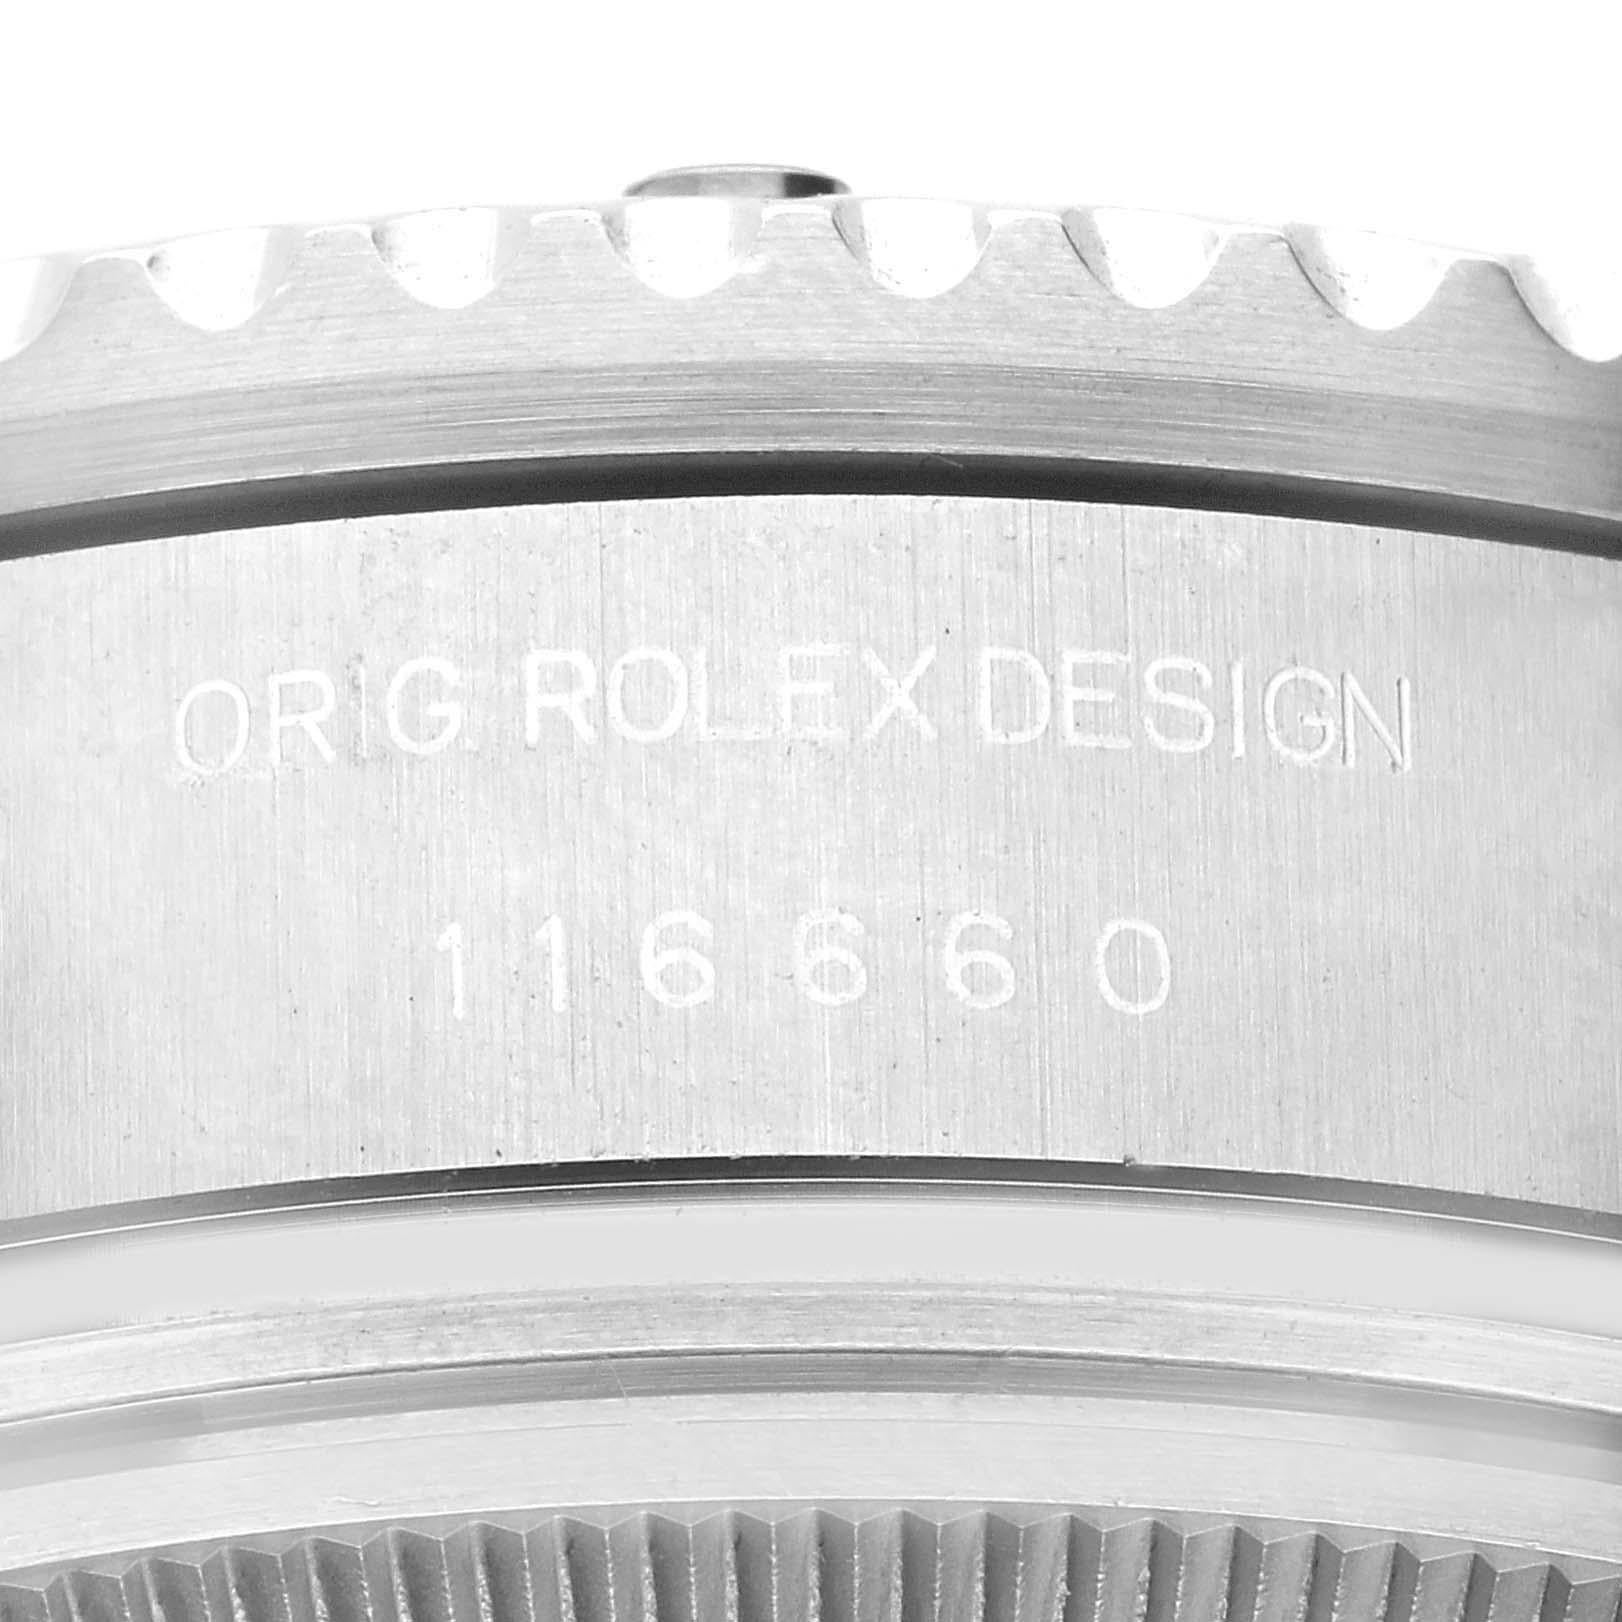 Rolex Seadweller Deepsea Keramik Lünette Stahl Herrenuhr 116660 Box Karte. Offiziell zertifiziertes Chronometerwerk mit automatischem Aufzug. Austerngehäuse aus Edelstahl mit einem Durchmesser von 44.0 mm. Rolex Logo auf der Krone. Spezielle